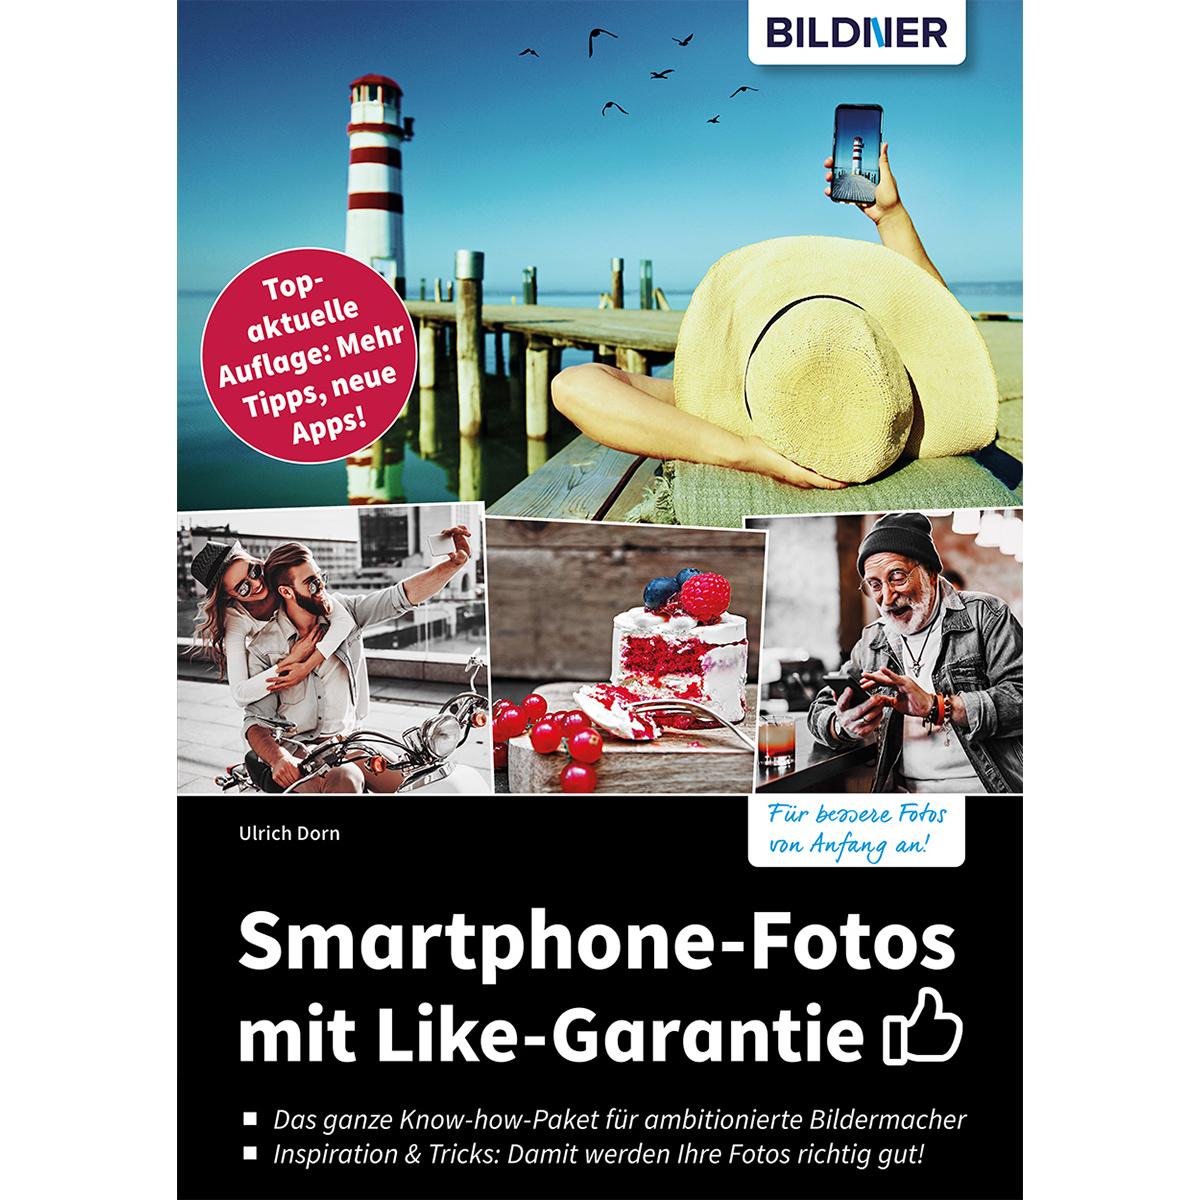 Smartphone-Fotos mit Like-Garantie Auflage: - Mehr neue Topaktuelle Tipps, Apps